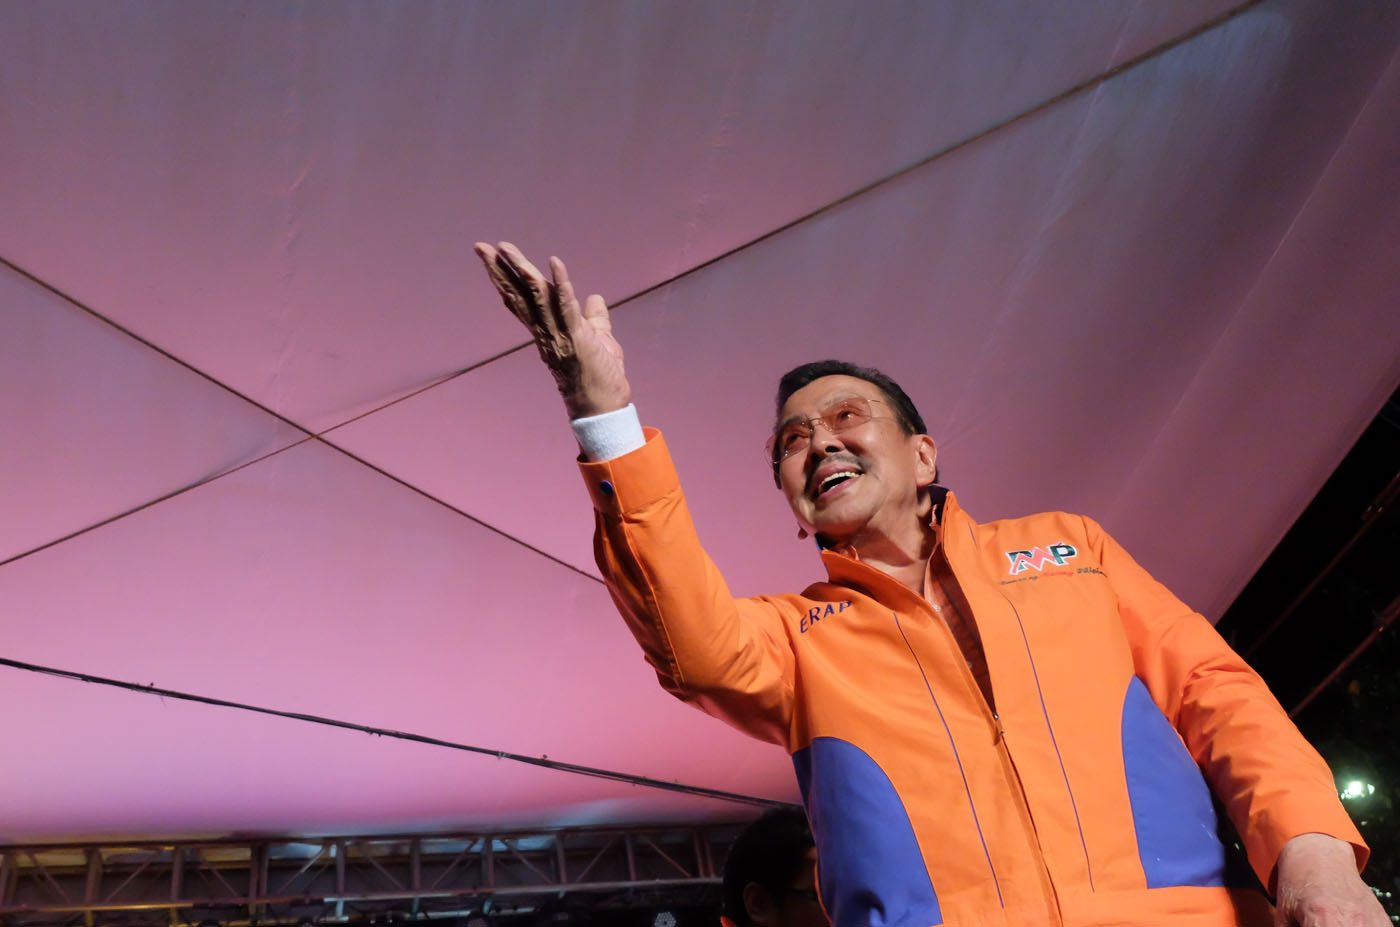 Erap wins close Manila mayoral race over Lim